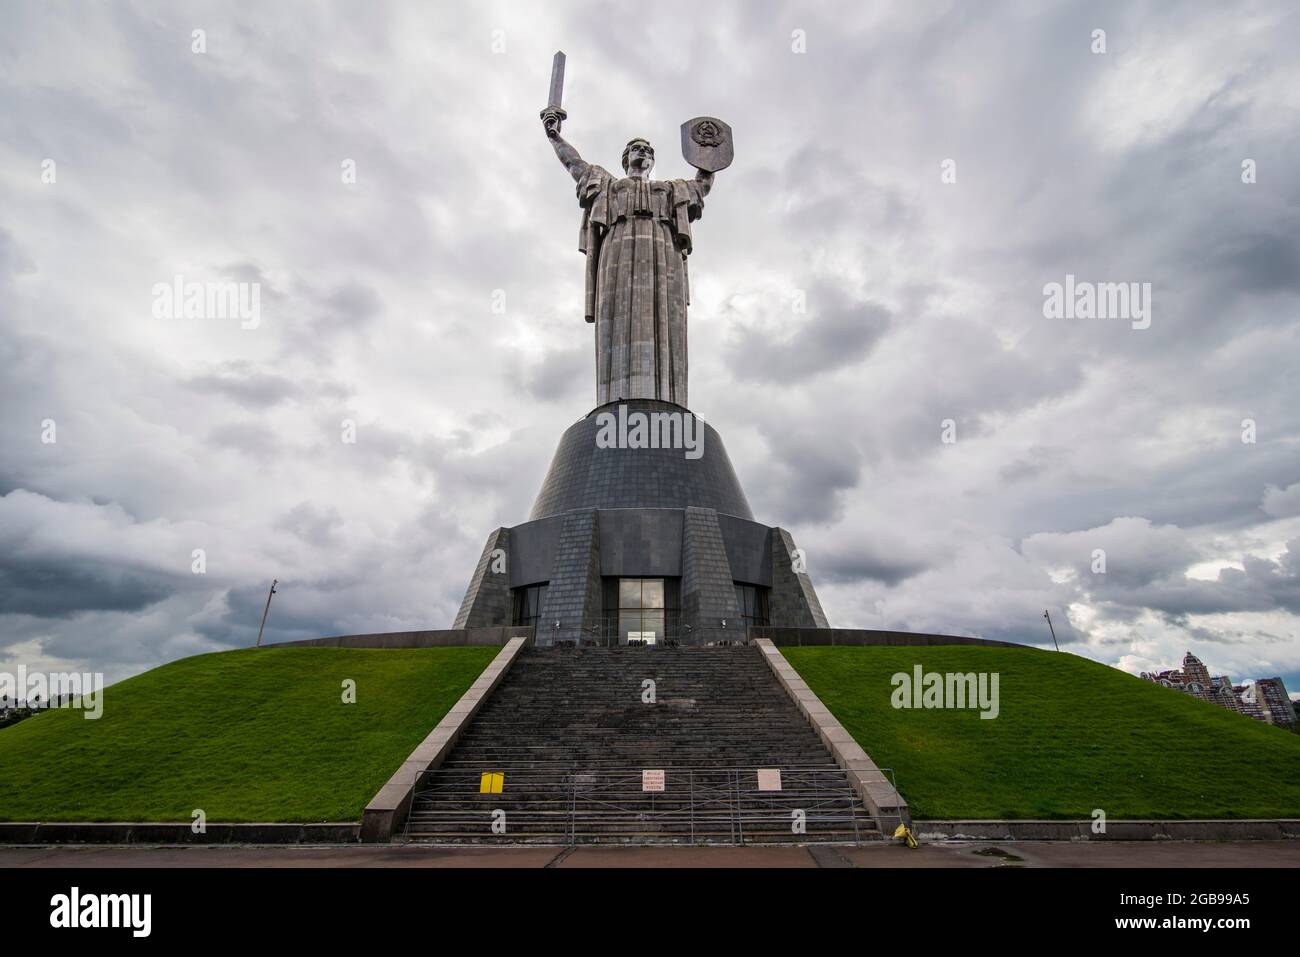 Rodina Mat und das Museum des großen partiotischen Kriegs-Uneneath mit Blick auf Kiew oder Kiew Hauptstadt der Ukraine Stockfoto